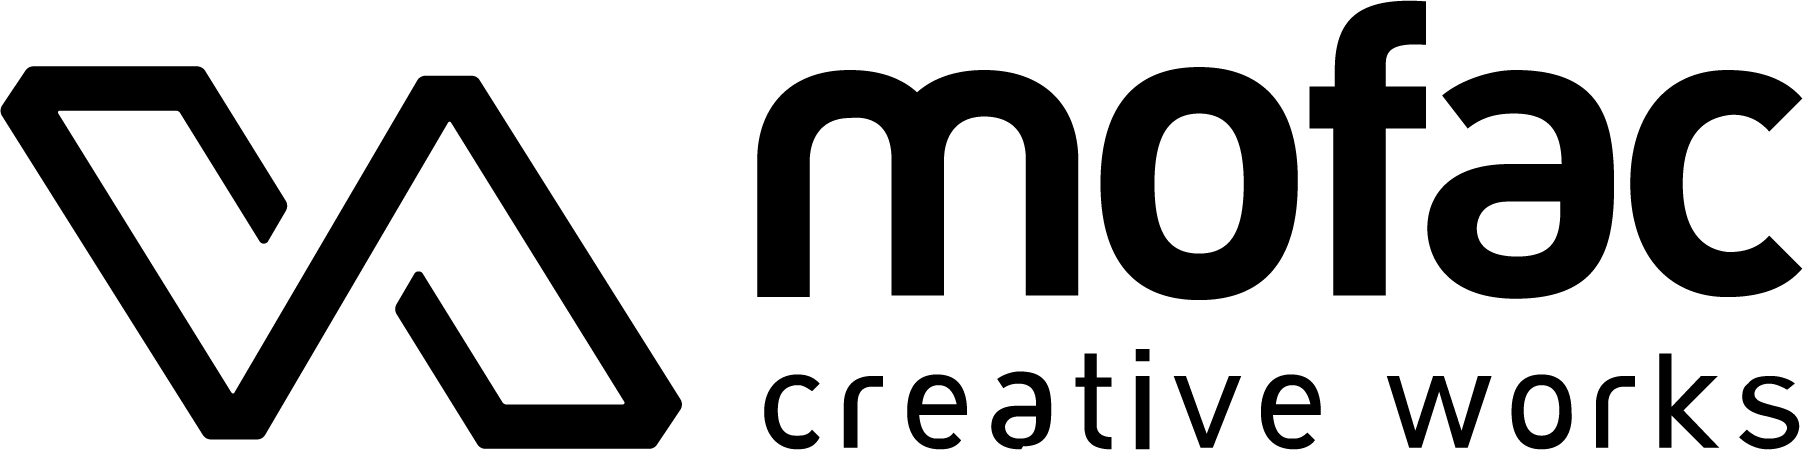 스탠더스의 계열사 (주)브이에이모팩의 로고